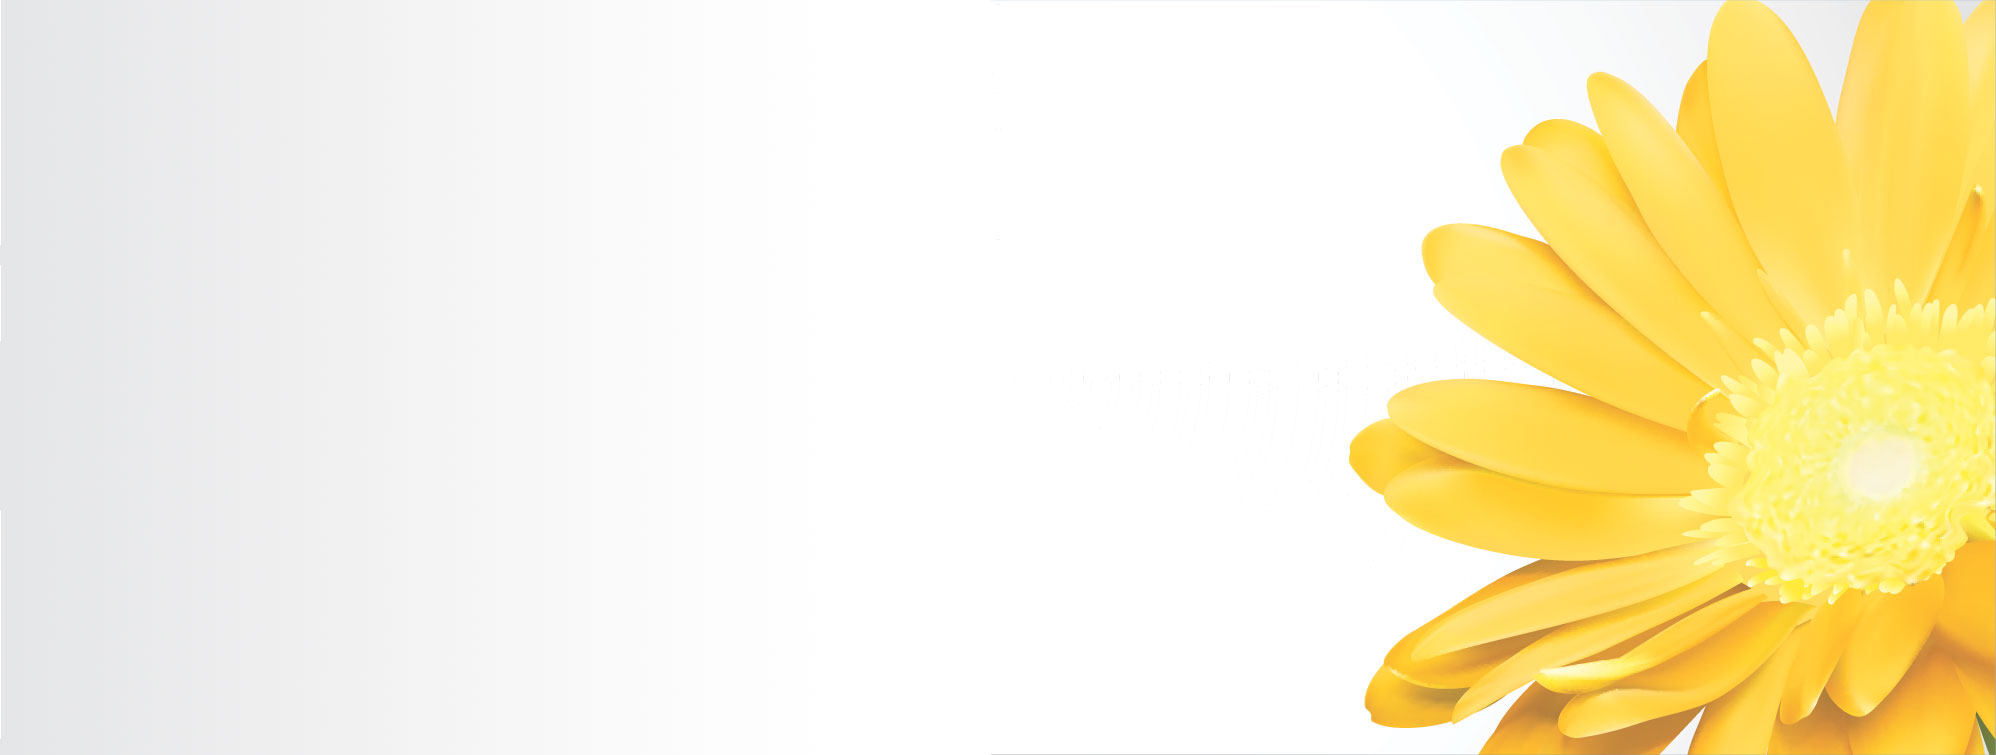 ガーベラ デージーのイラスト 画像no 58 バナー ガーベラ デージー 無料のフリー素材集 百花繚乱